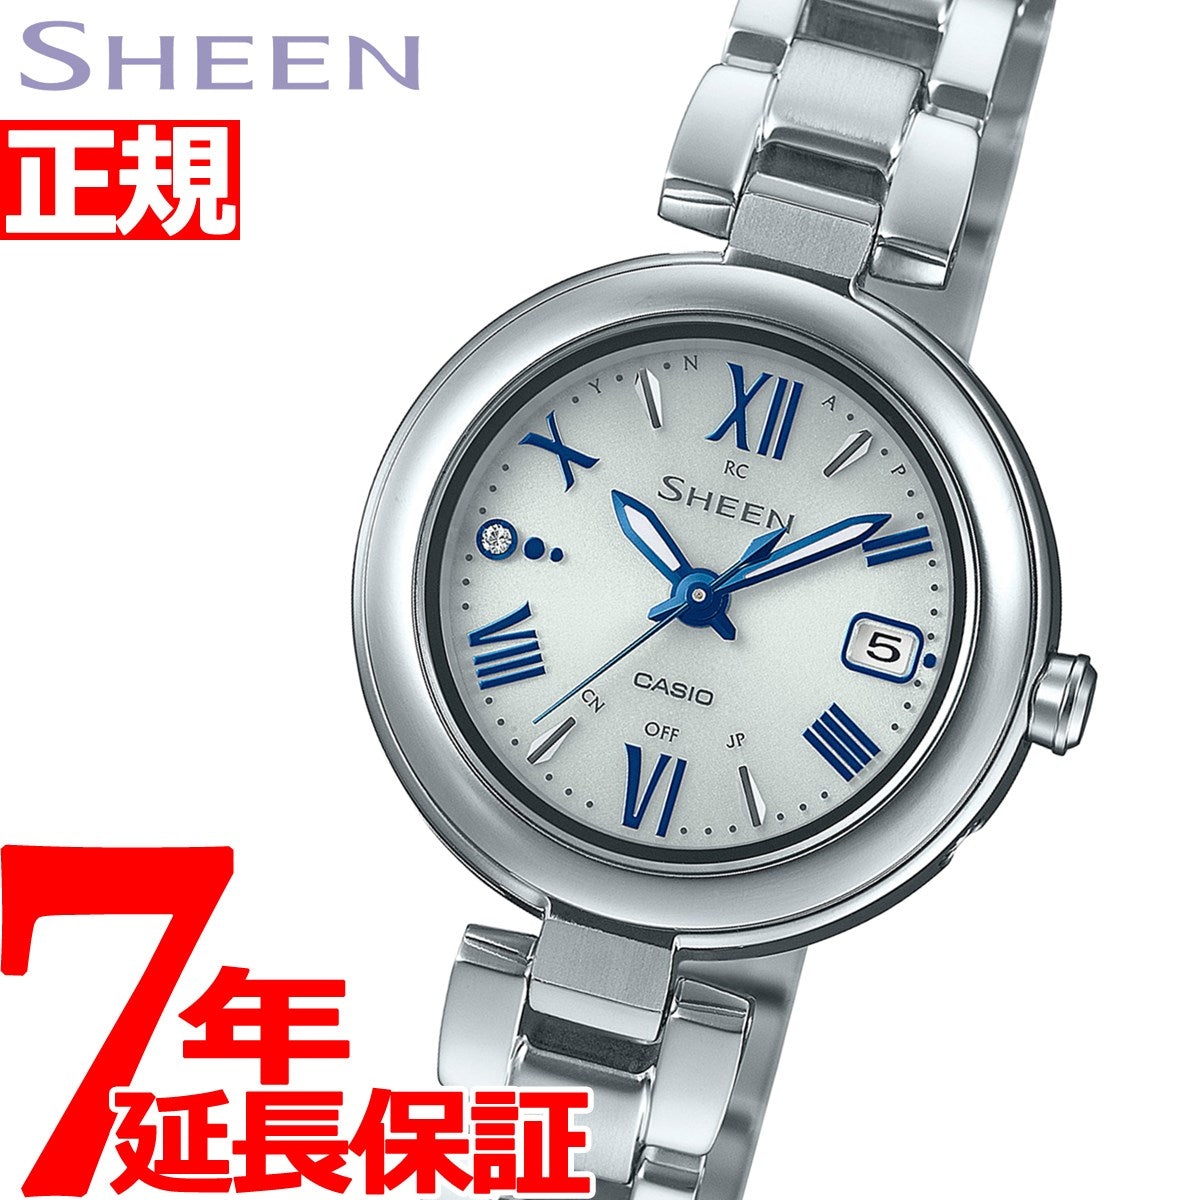 カシオ シーン 腕時計 レディース 電波ソーラー SHW-7100TD-7AJF